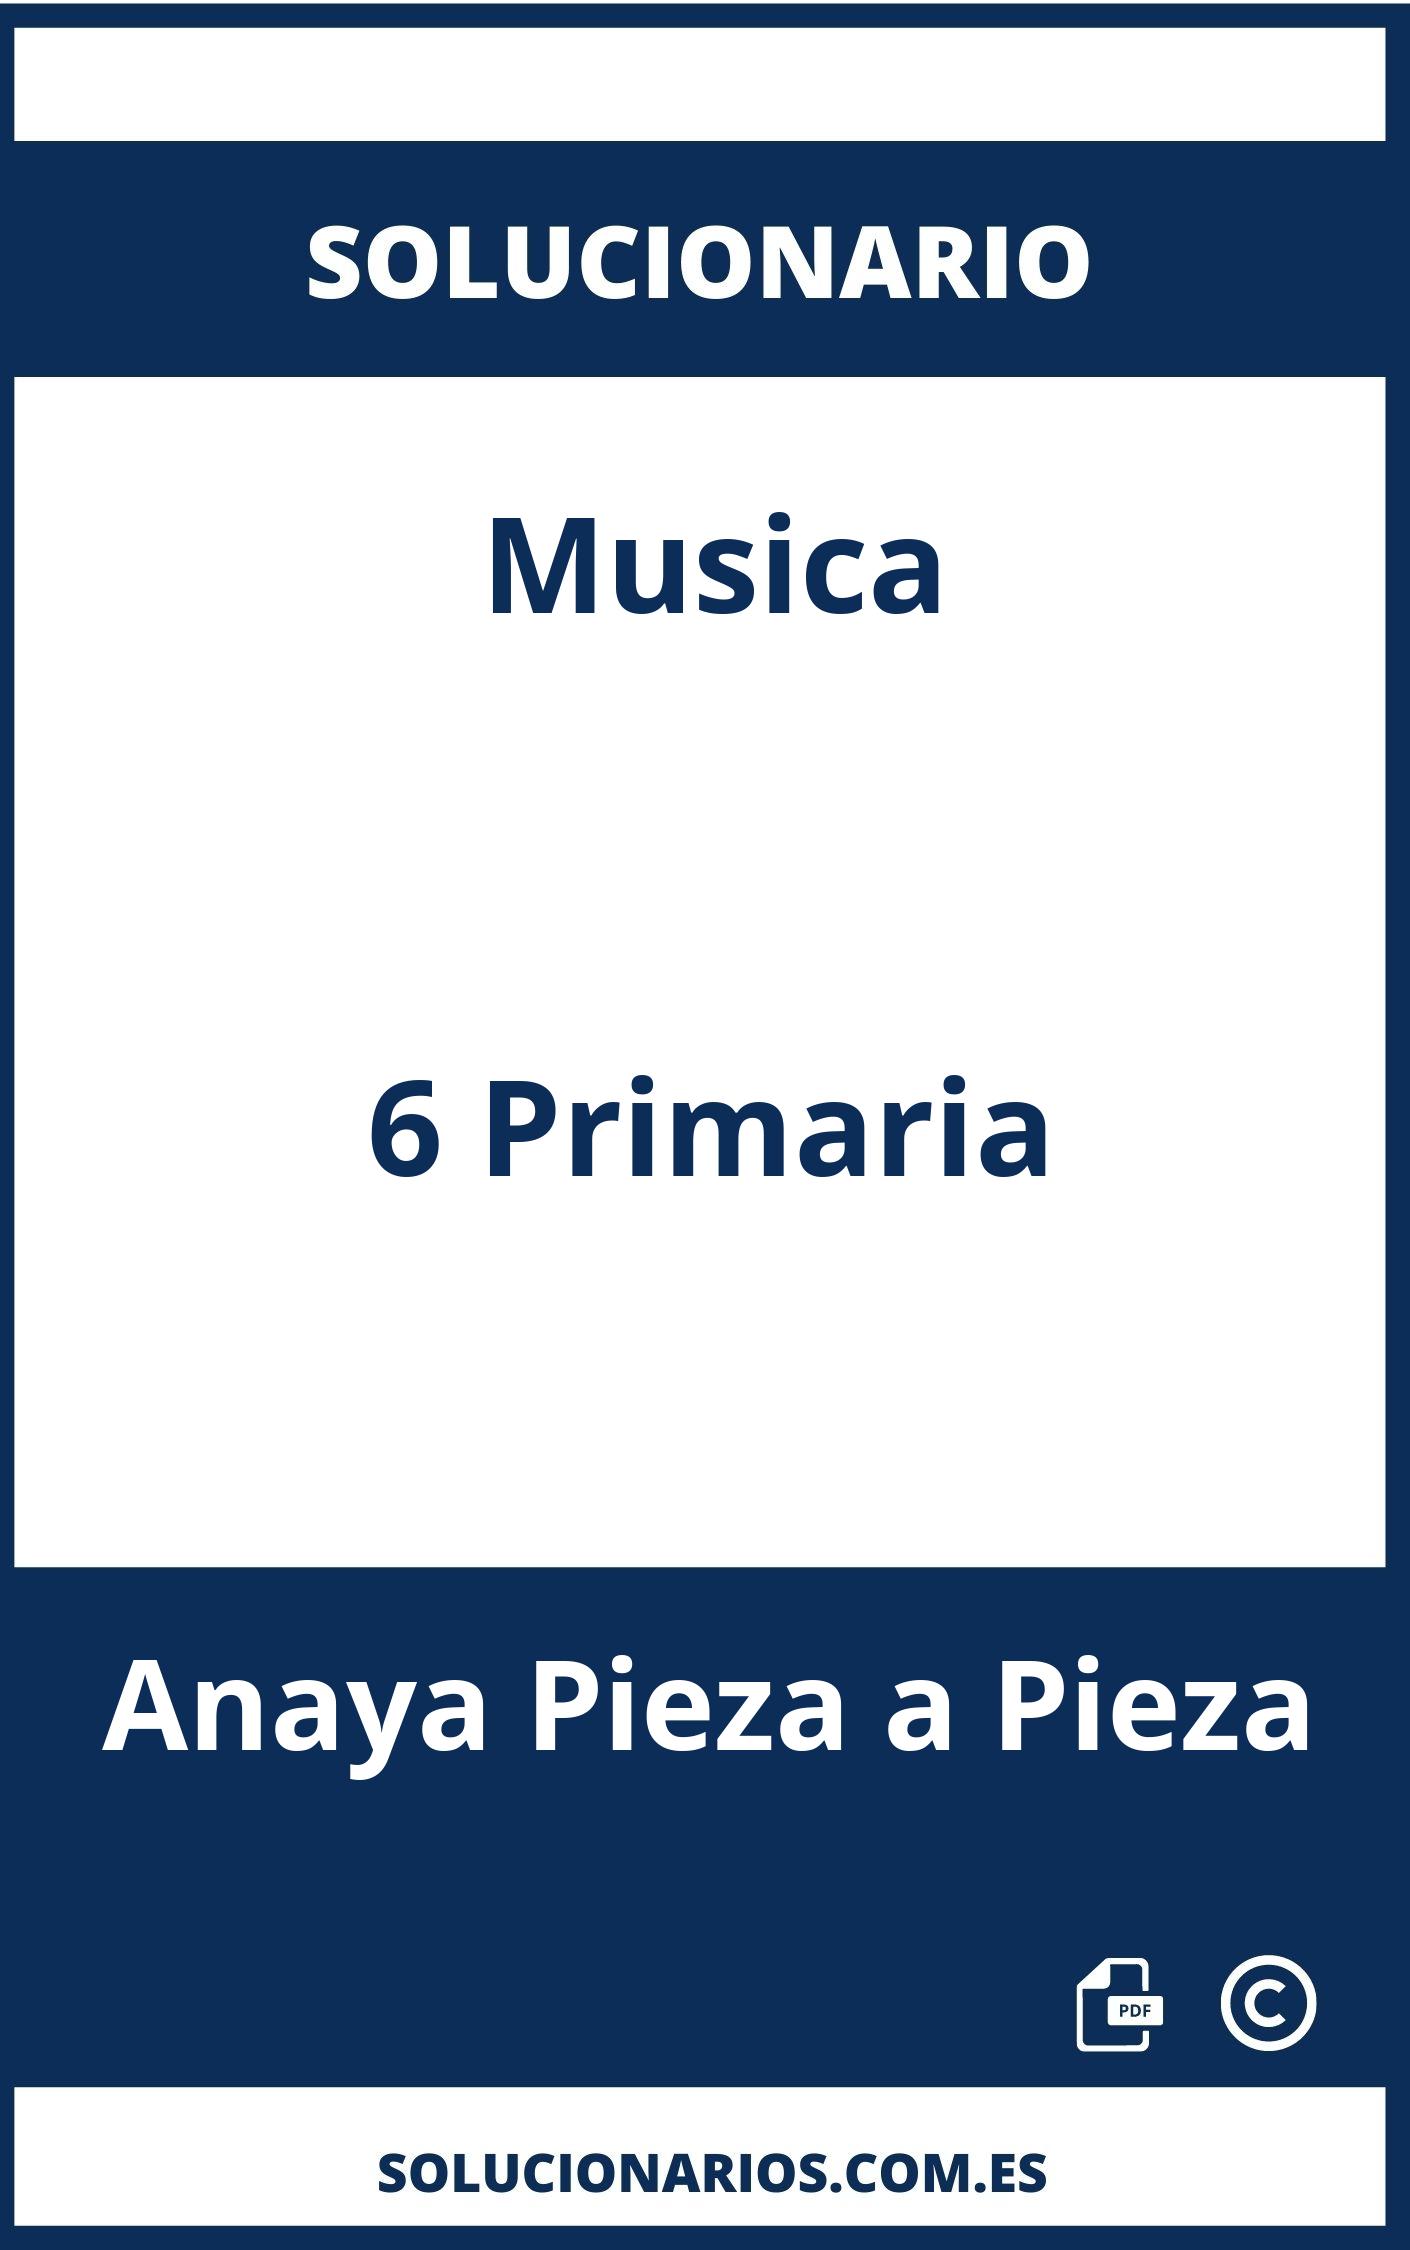 Solucionario Musica 6 Primaria Anaya Pieza a Pieza